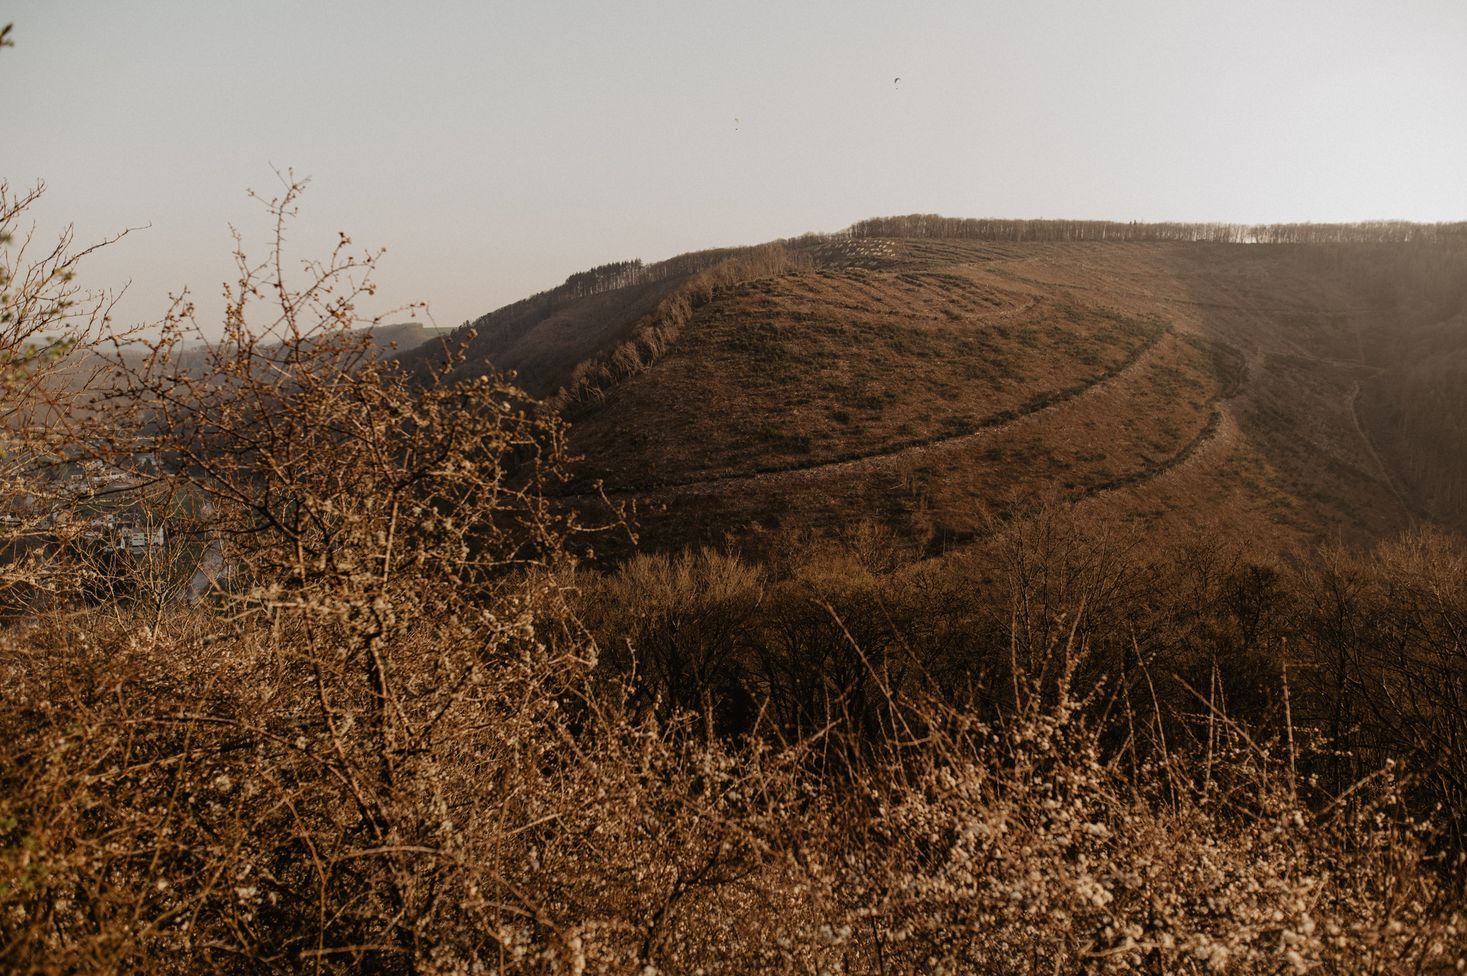 Ein Naturfoto von einem Aussichtspunkt, auf dem ein Berg und viel Gestrüpp zu sehen sind. Die Landschaft ist herbstlich und in der Dämmerung aufgenommen.